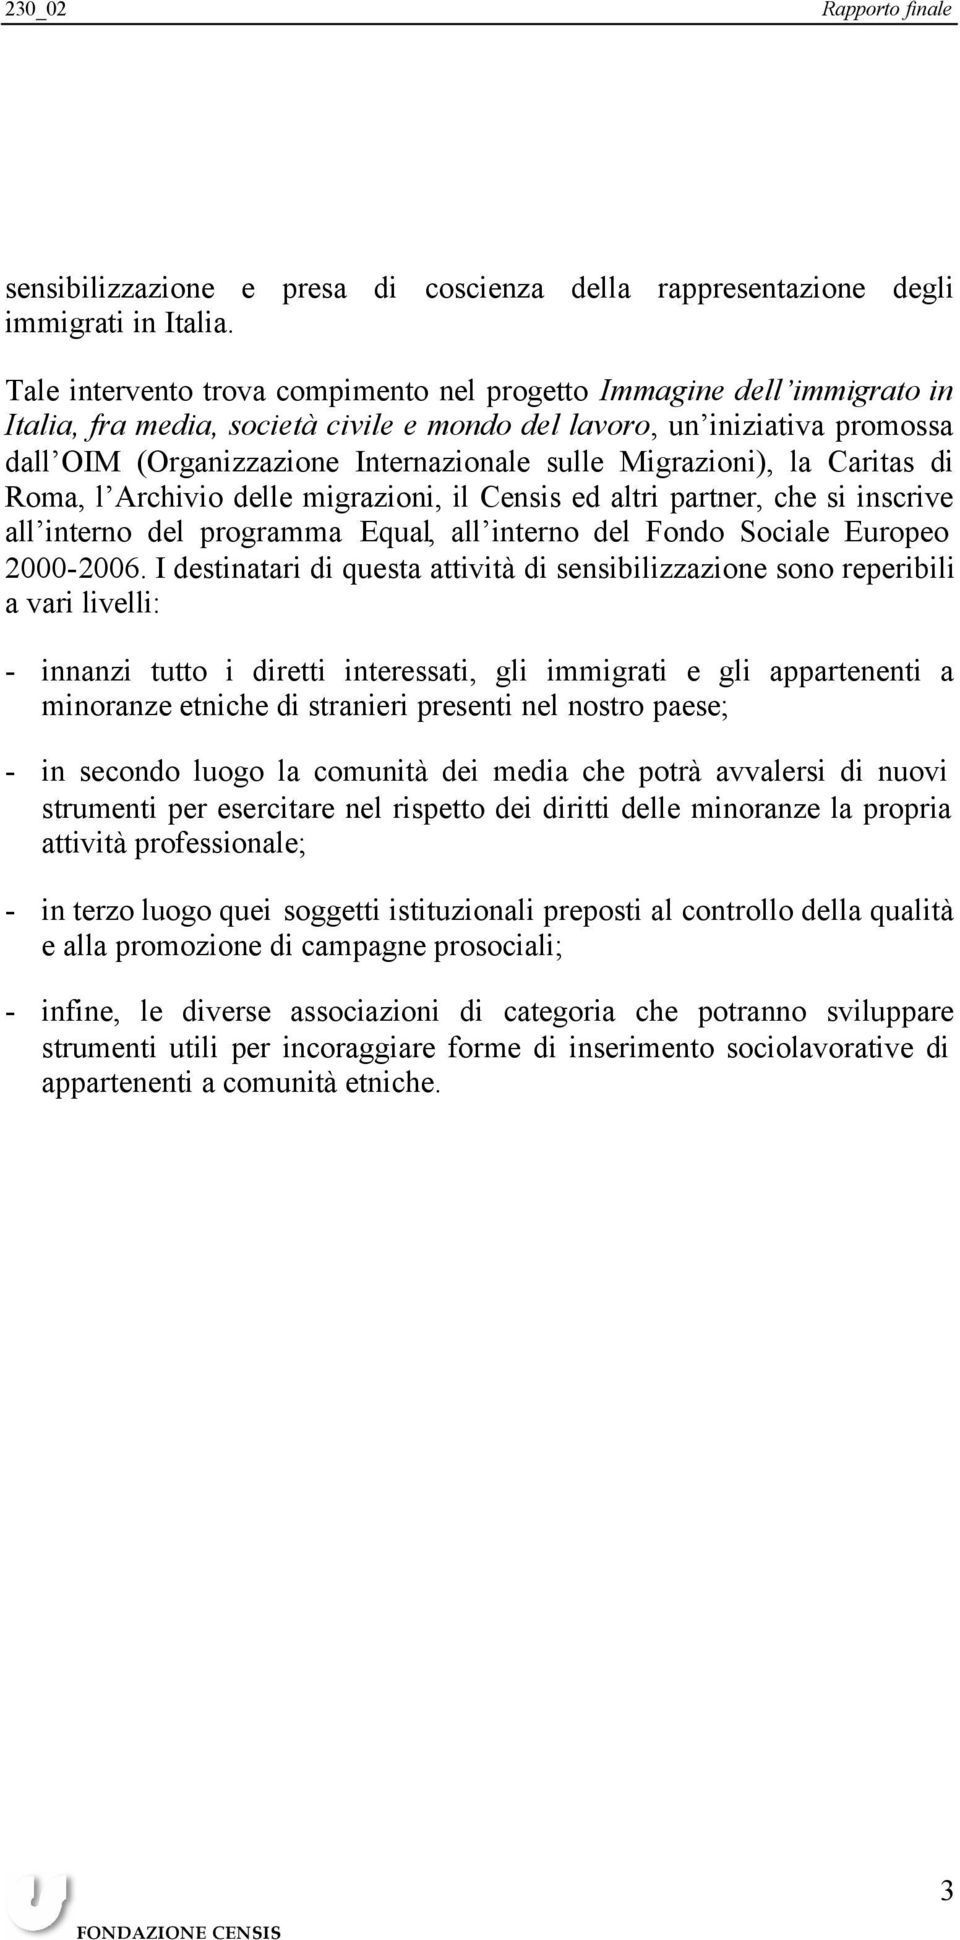 Migrazioni), la Caritas di Roma, l Archivio delle migrazioni, il Censis ed altri partner, che si inscrive all interno del programma Equal, all interno del Fondo Sociale Europeo 2000-2006.